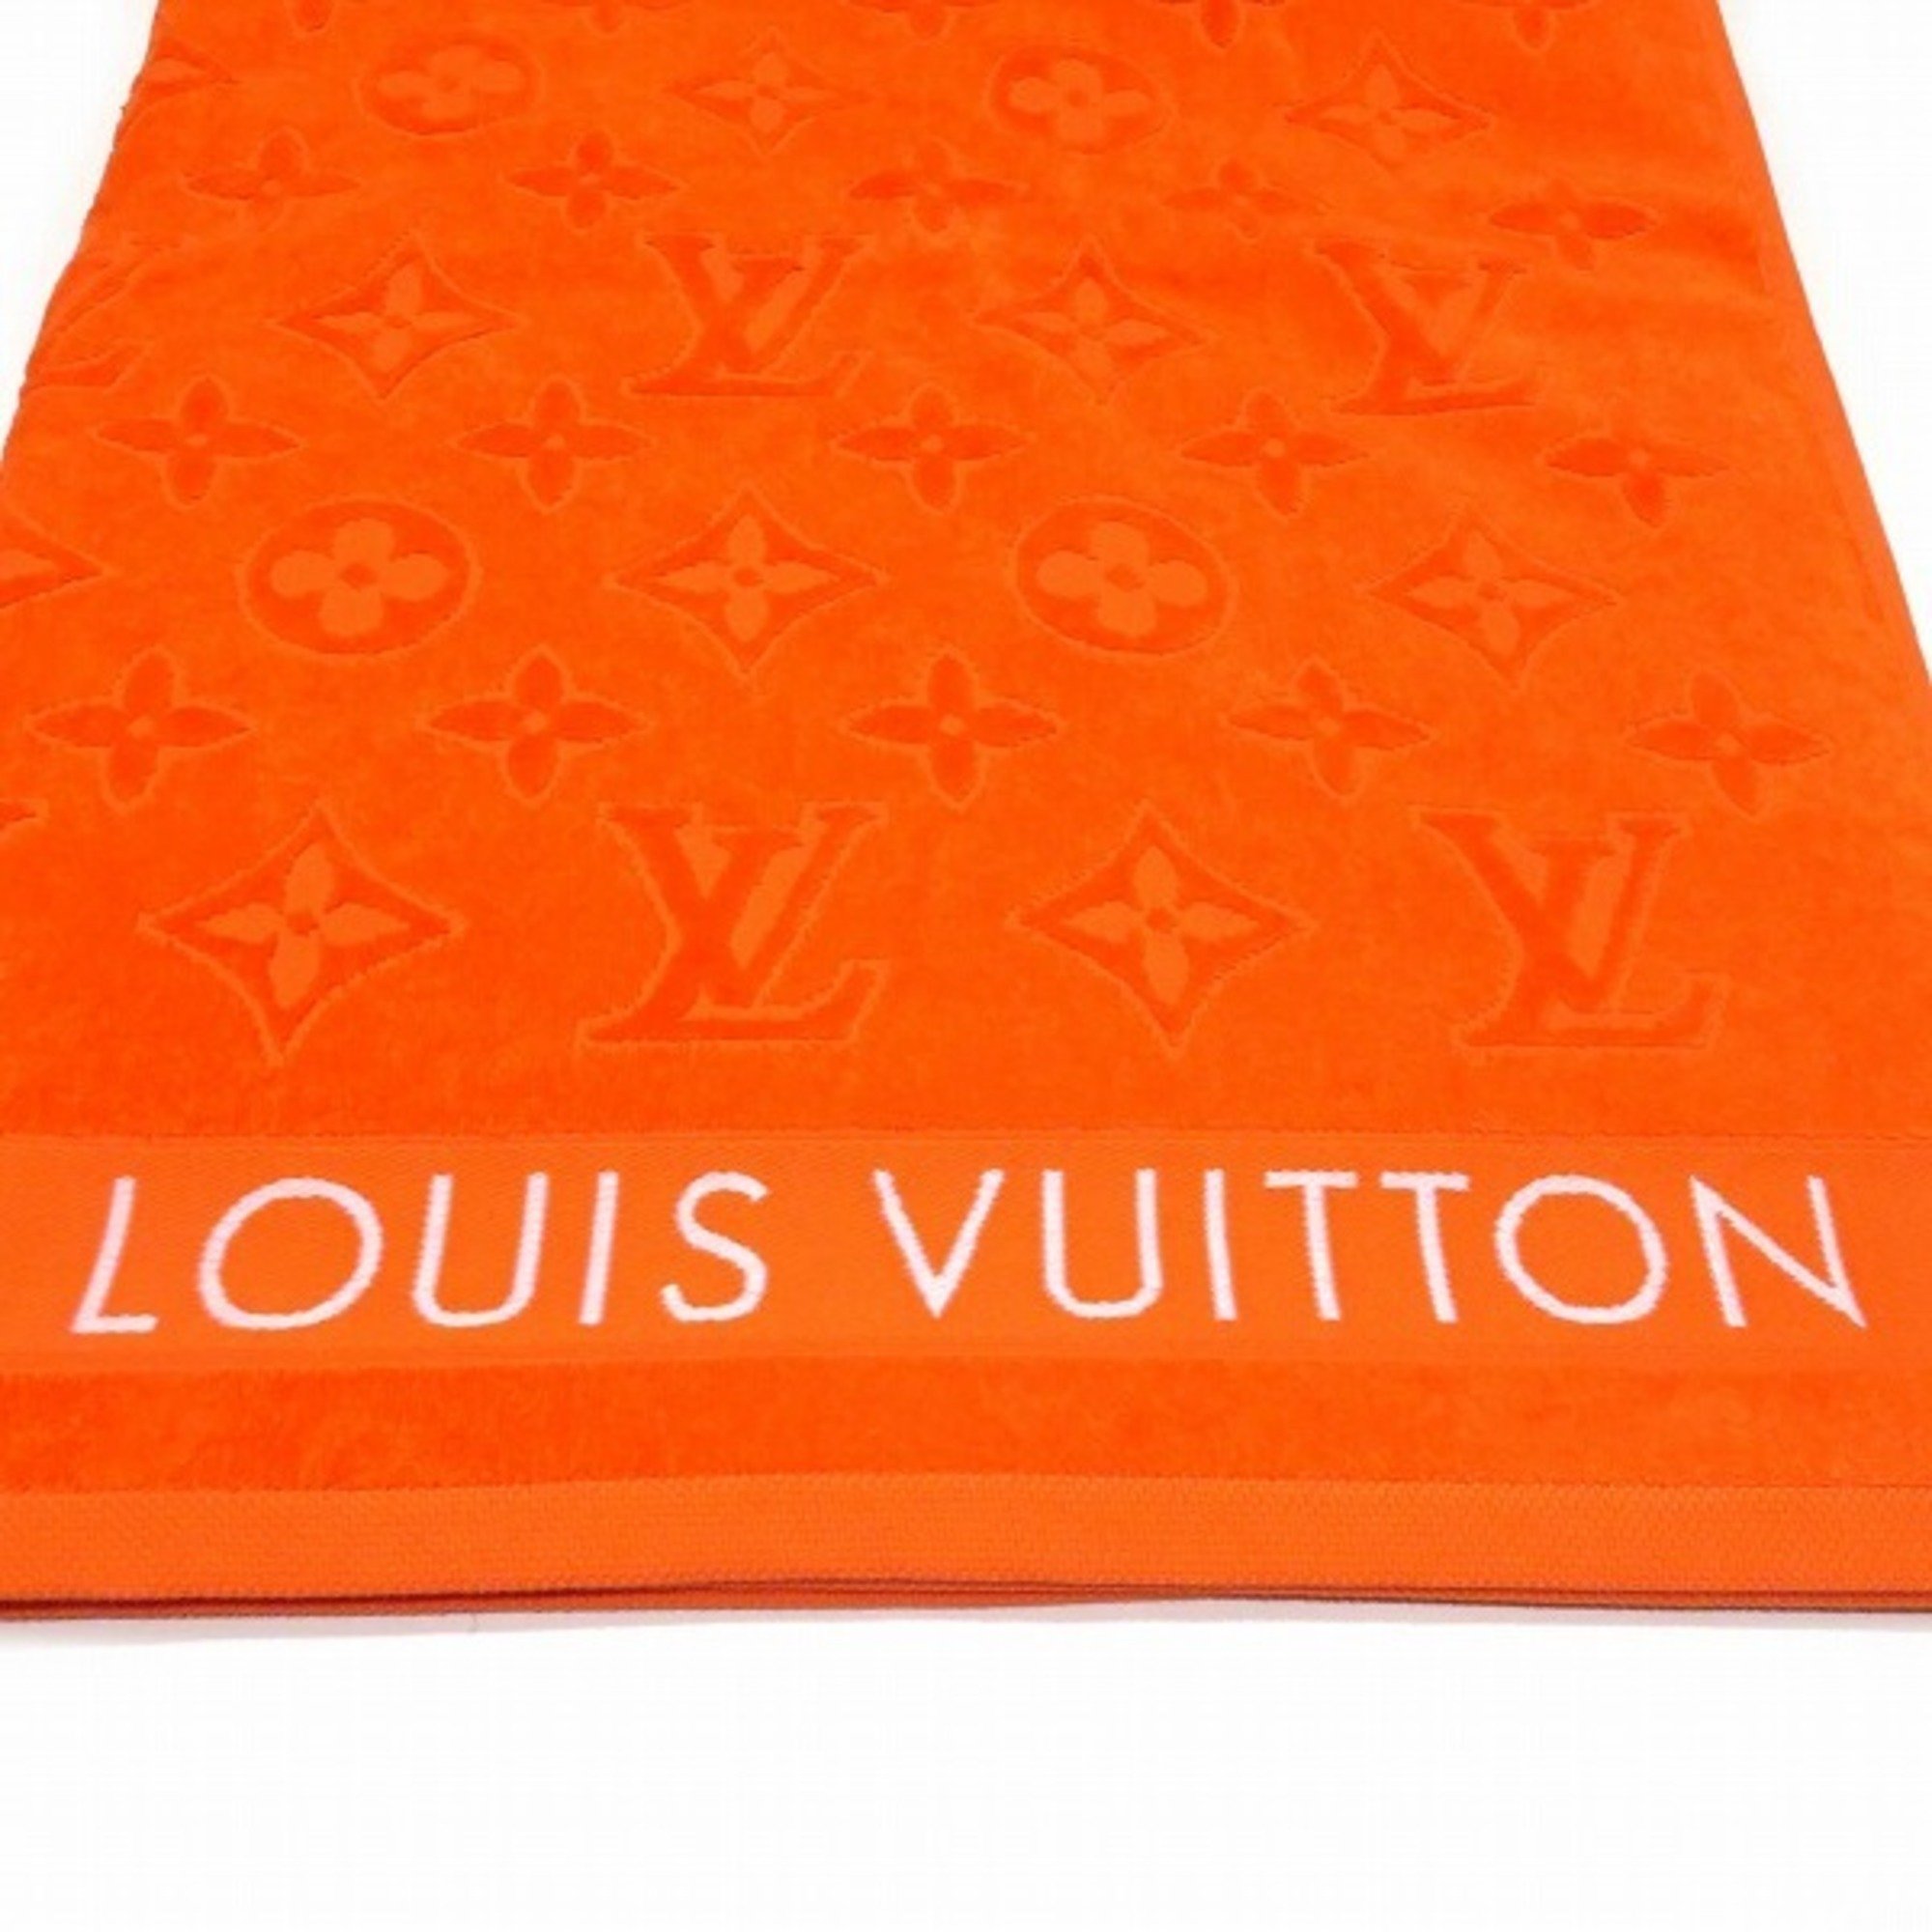 Louis Vuitton Beach Towel/LV Vacation M78457 Large Bath Towel Blanket Unisex Accessory